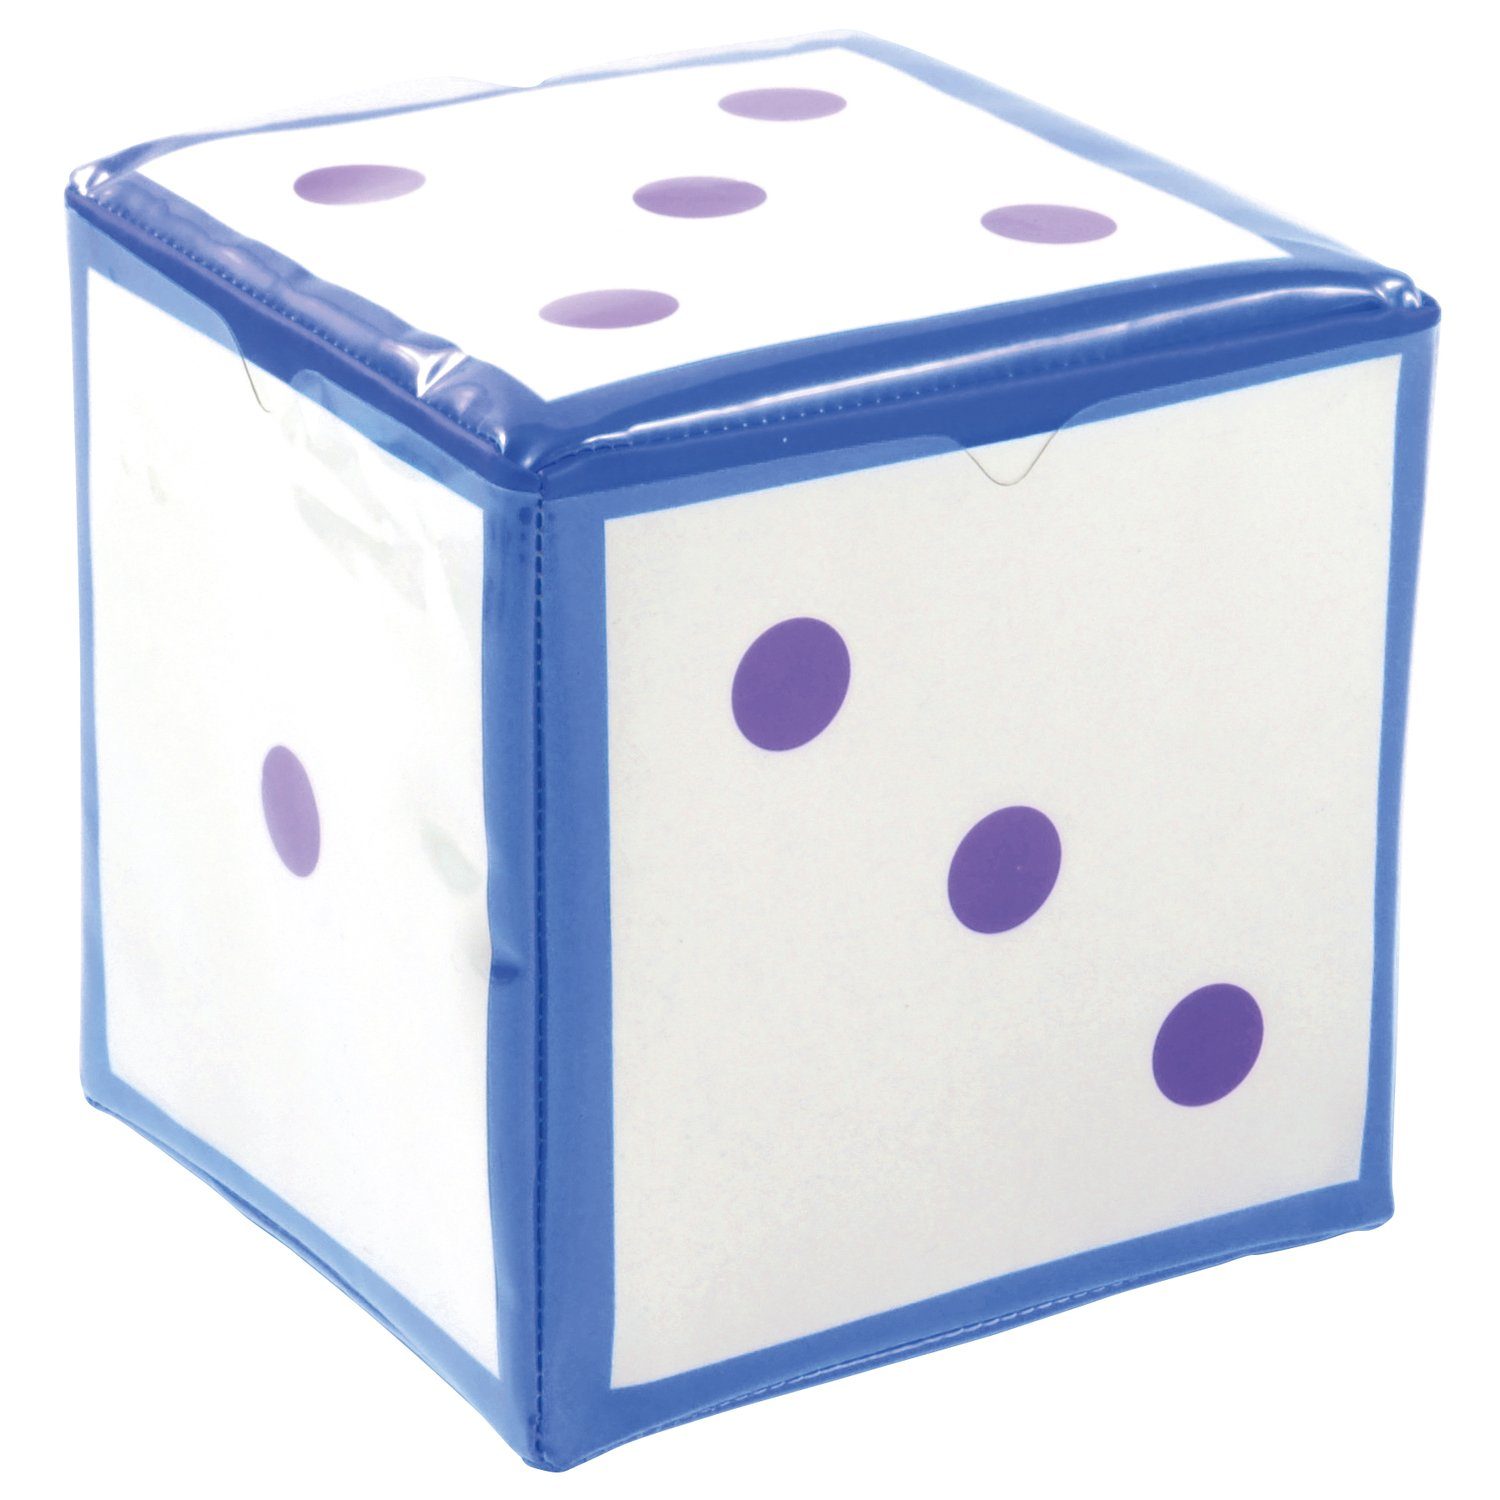 EDUPLAY Spiel, Schaumstoff-Würfel mit Taschen, 15,5 x 15,5 cm Blau